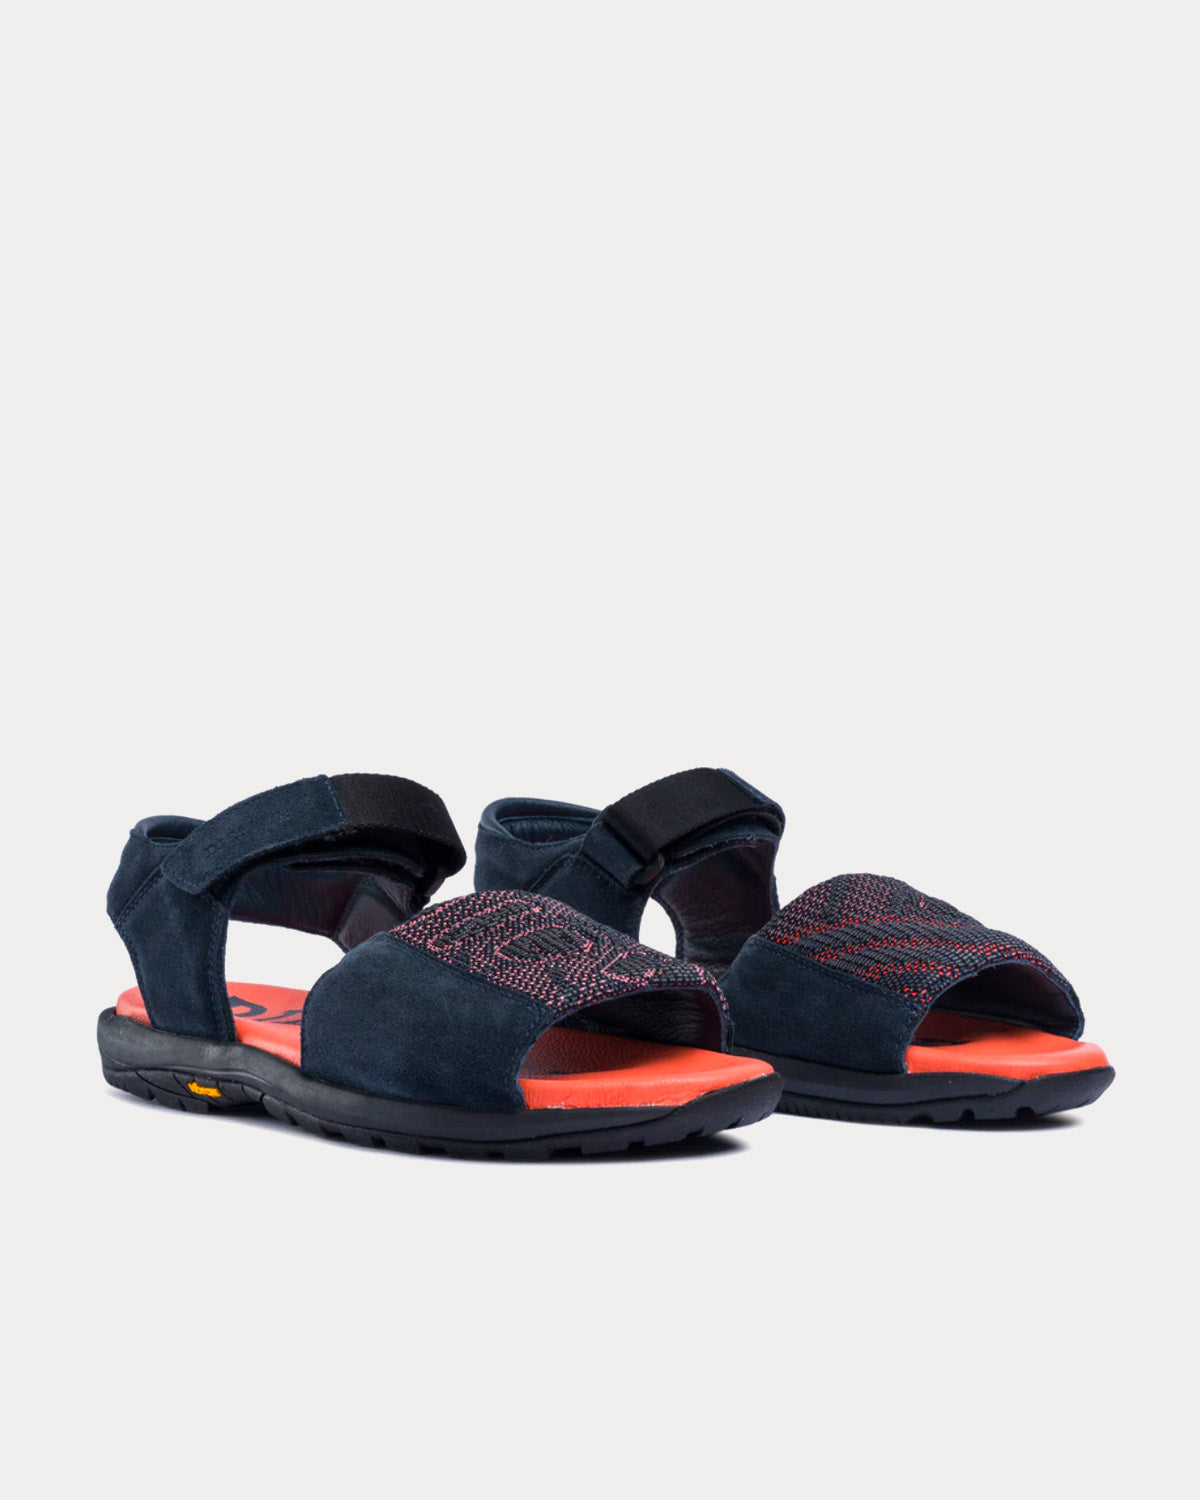 Diemme x Byborre - Dune Navy Sandals